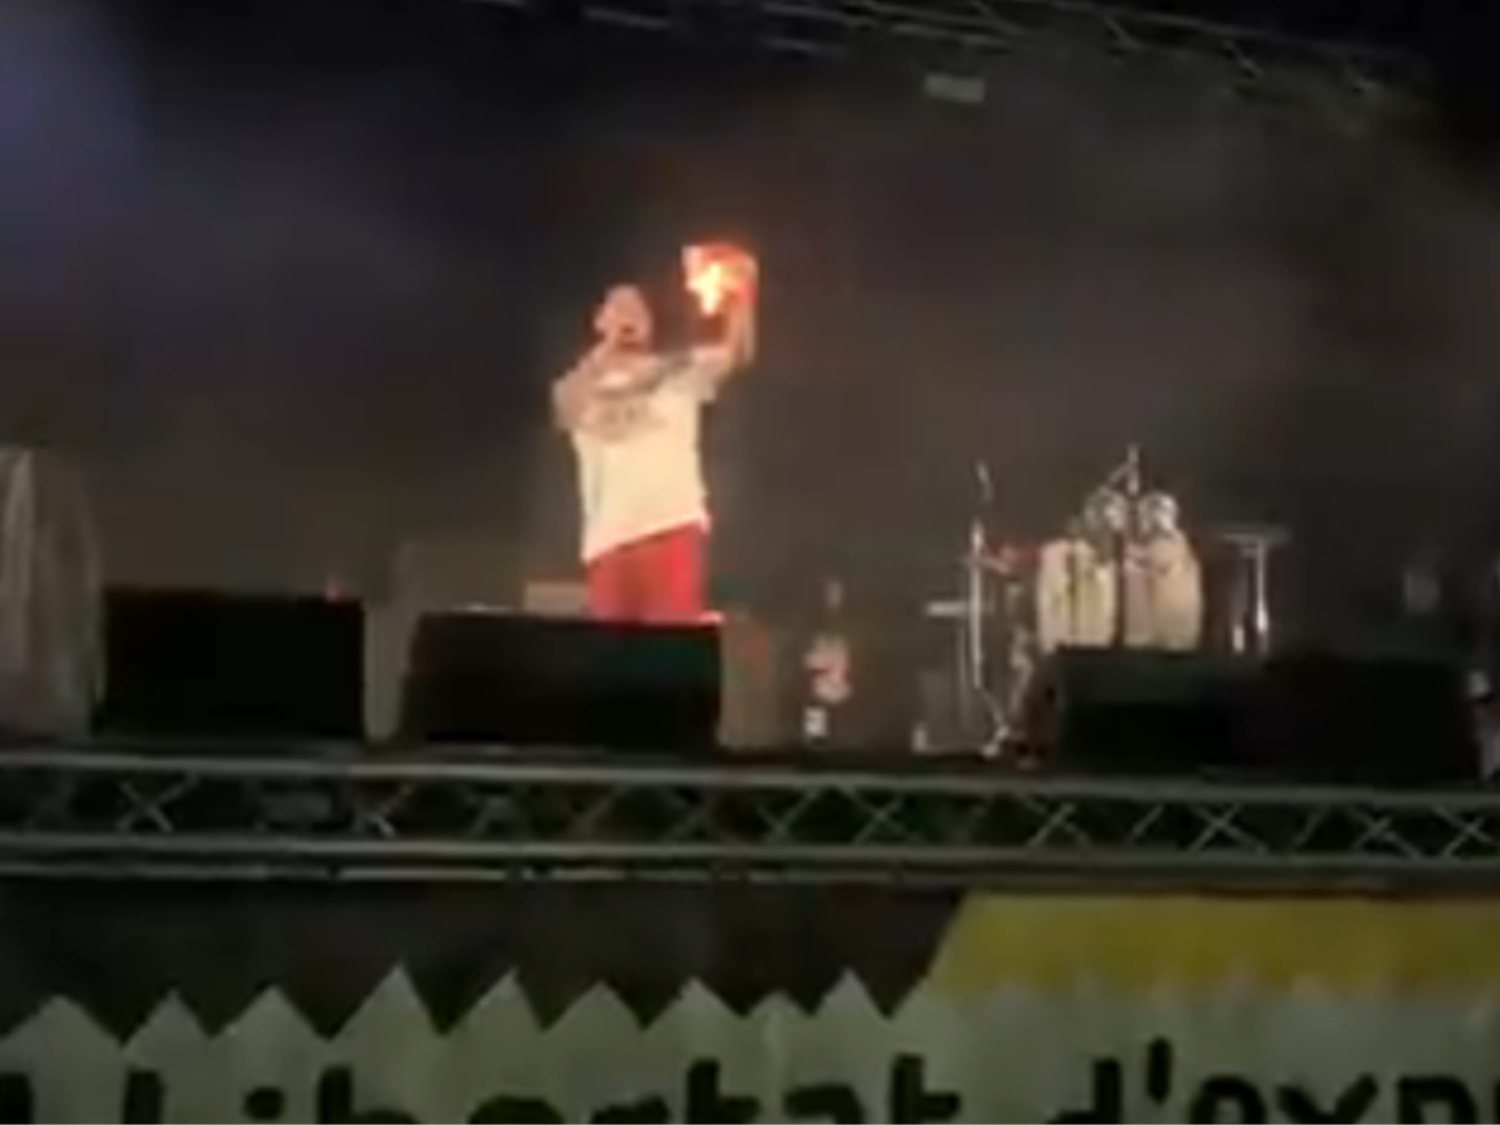 Pablo Hasel quema una bandera de España en un concierto: "No podemos tolerar el fascismo"